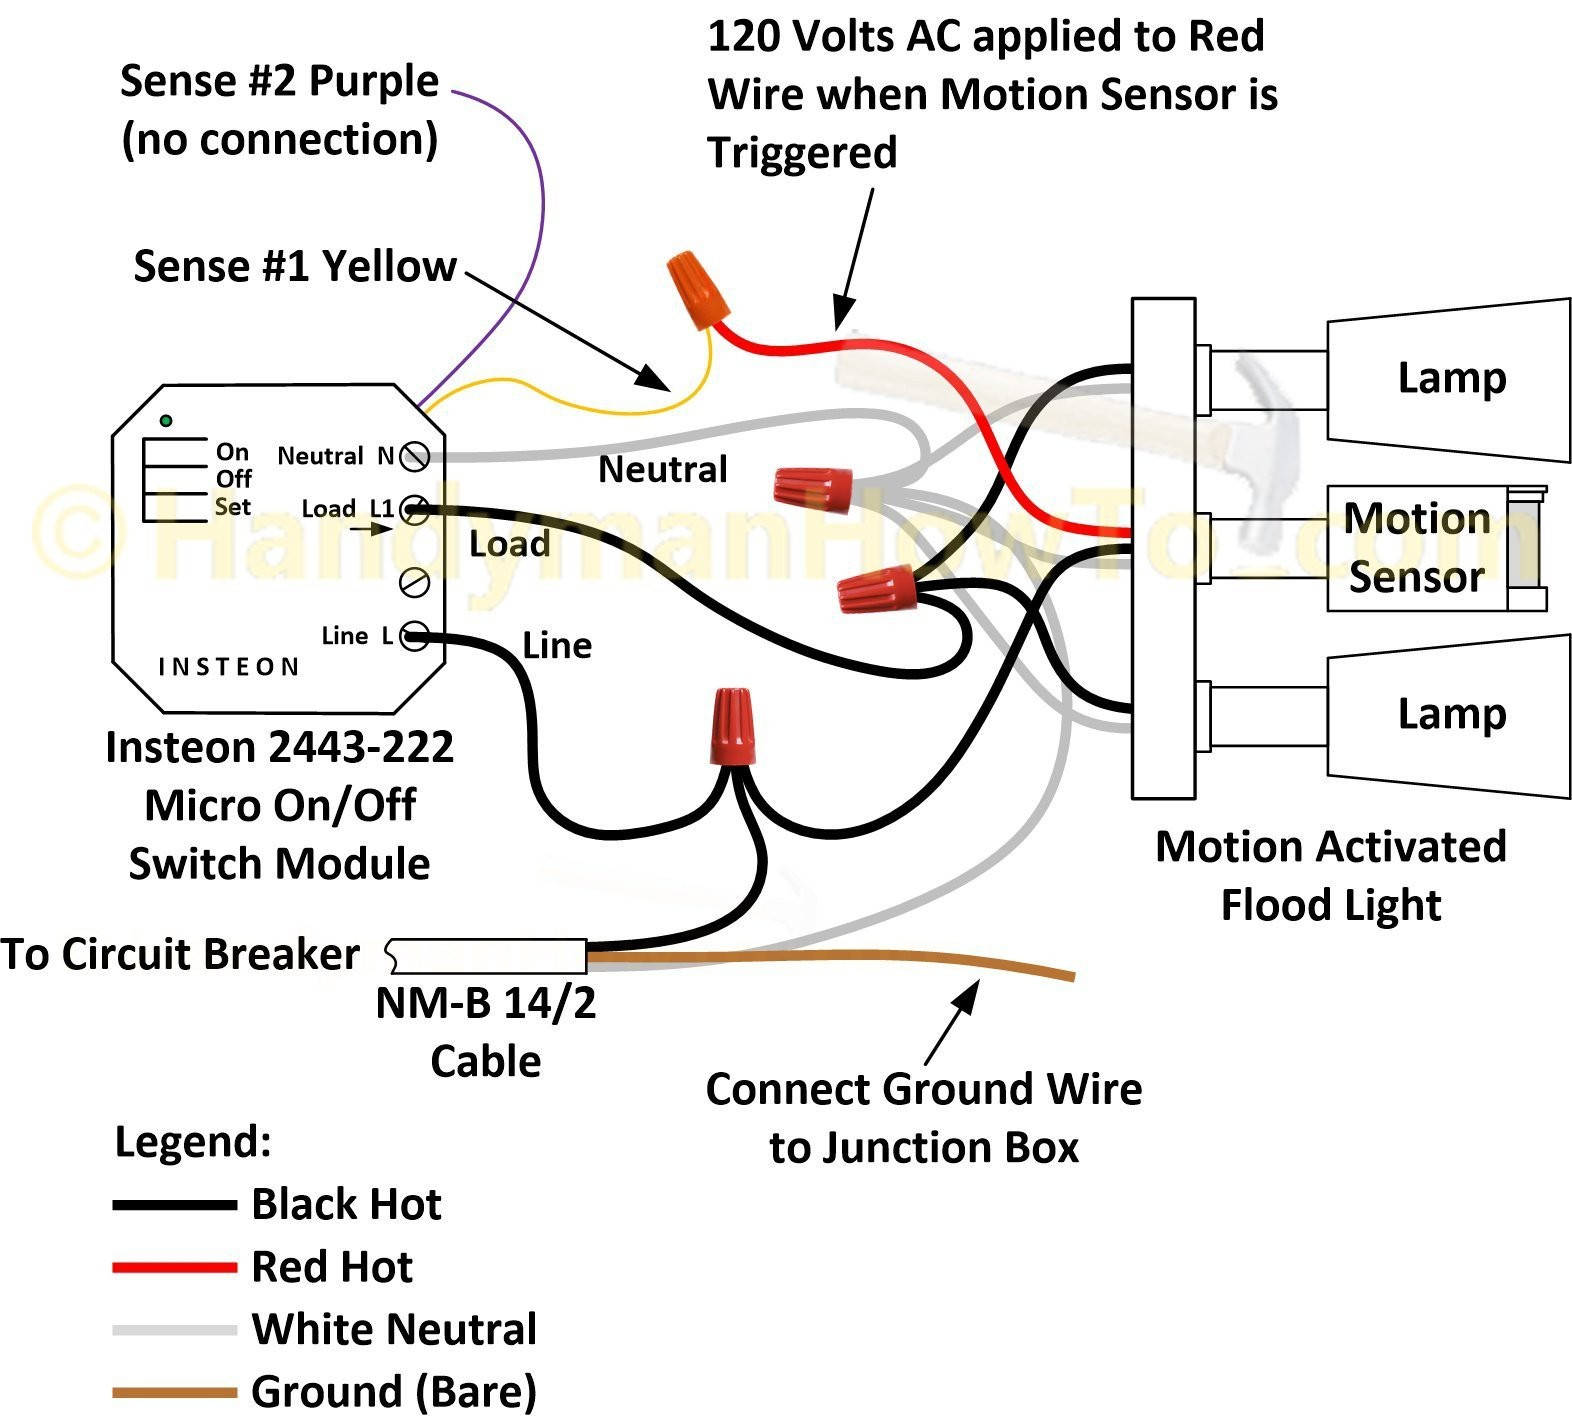 Motion Sensor Wiring Diagram 3 Way | Wiring Diagram - 3 Way Motion Sensor Switch Wiring Diagram